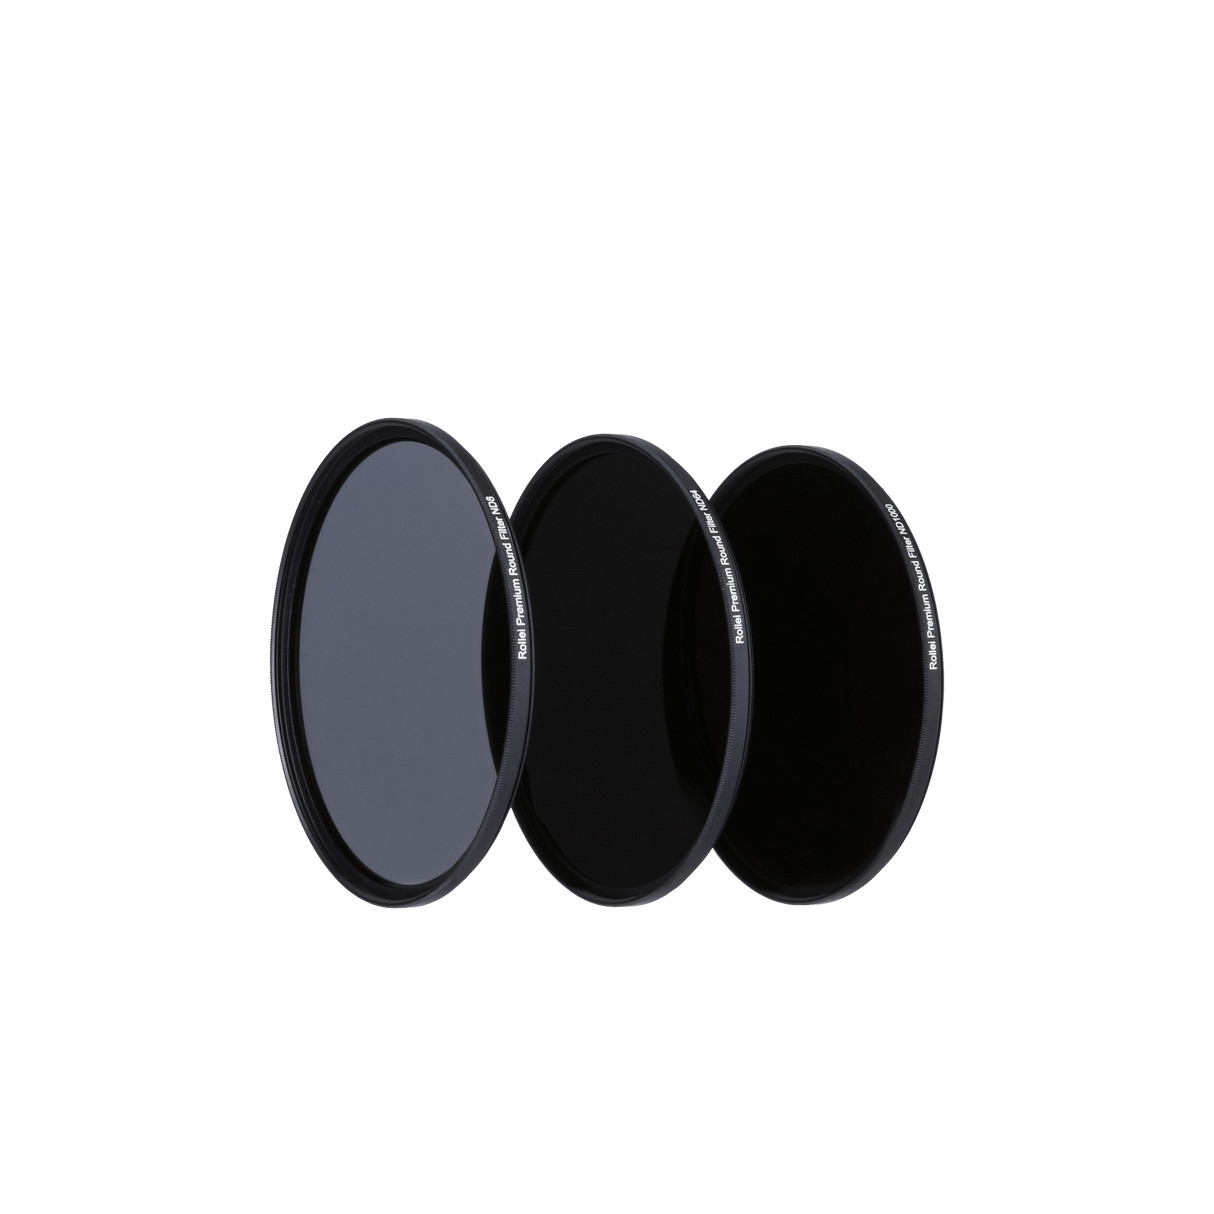 Rollei Filter Graufilter Set (ND8 / ND64 / ND1000) - kleine Rundfilter für DSLM-Kameras